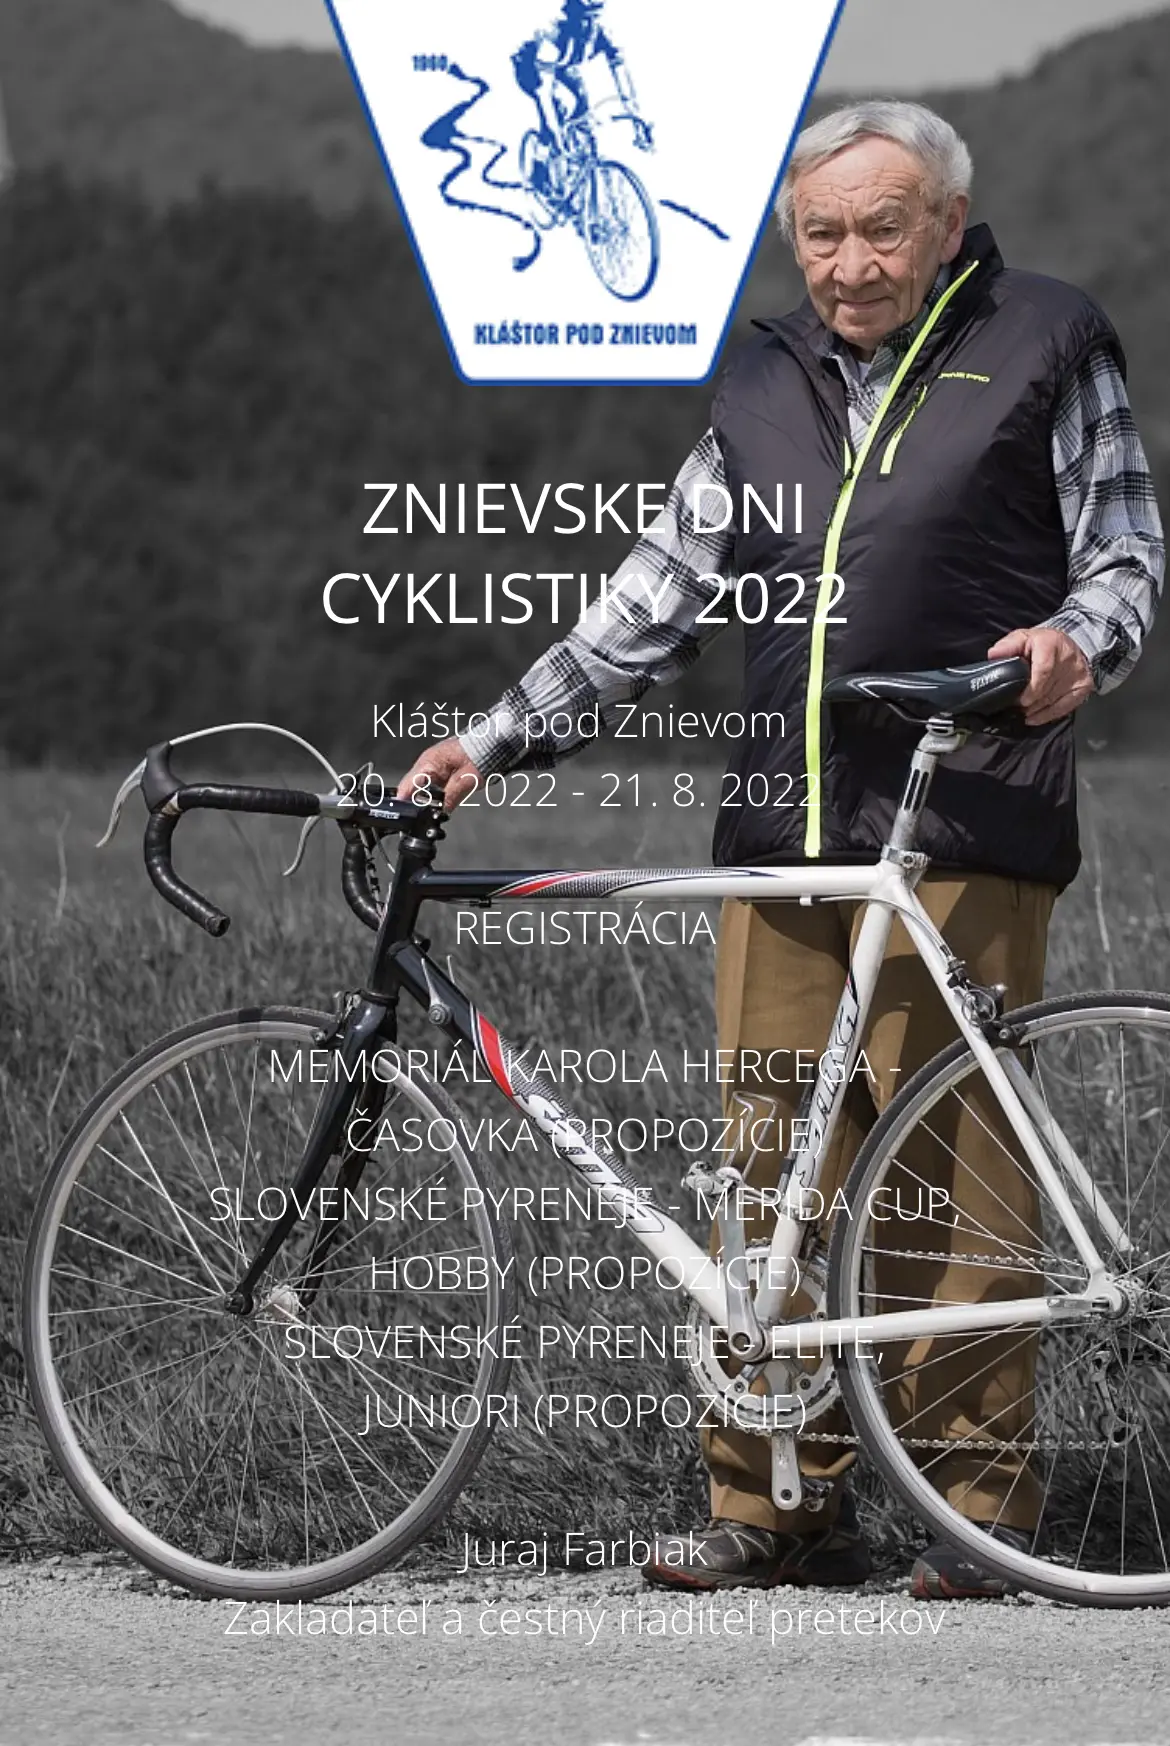 znievske dni cyklistiky 2022